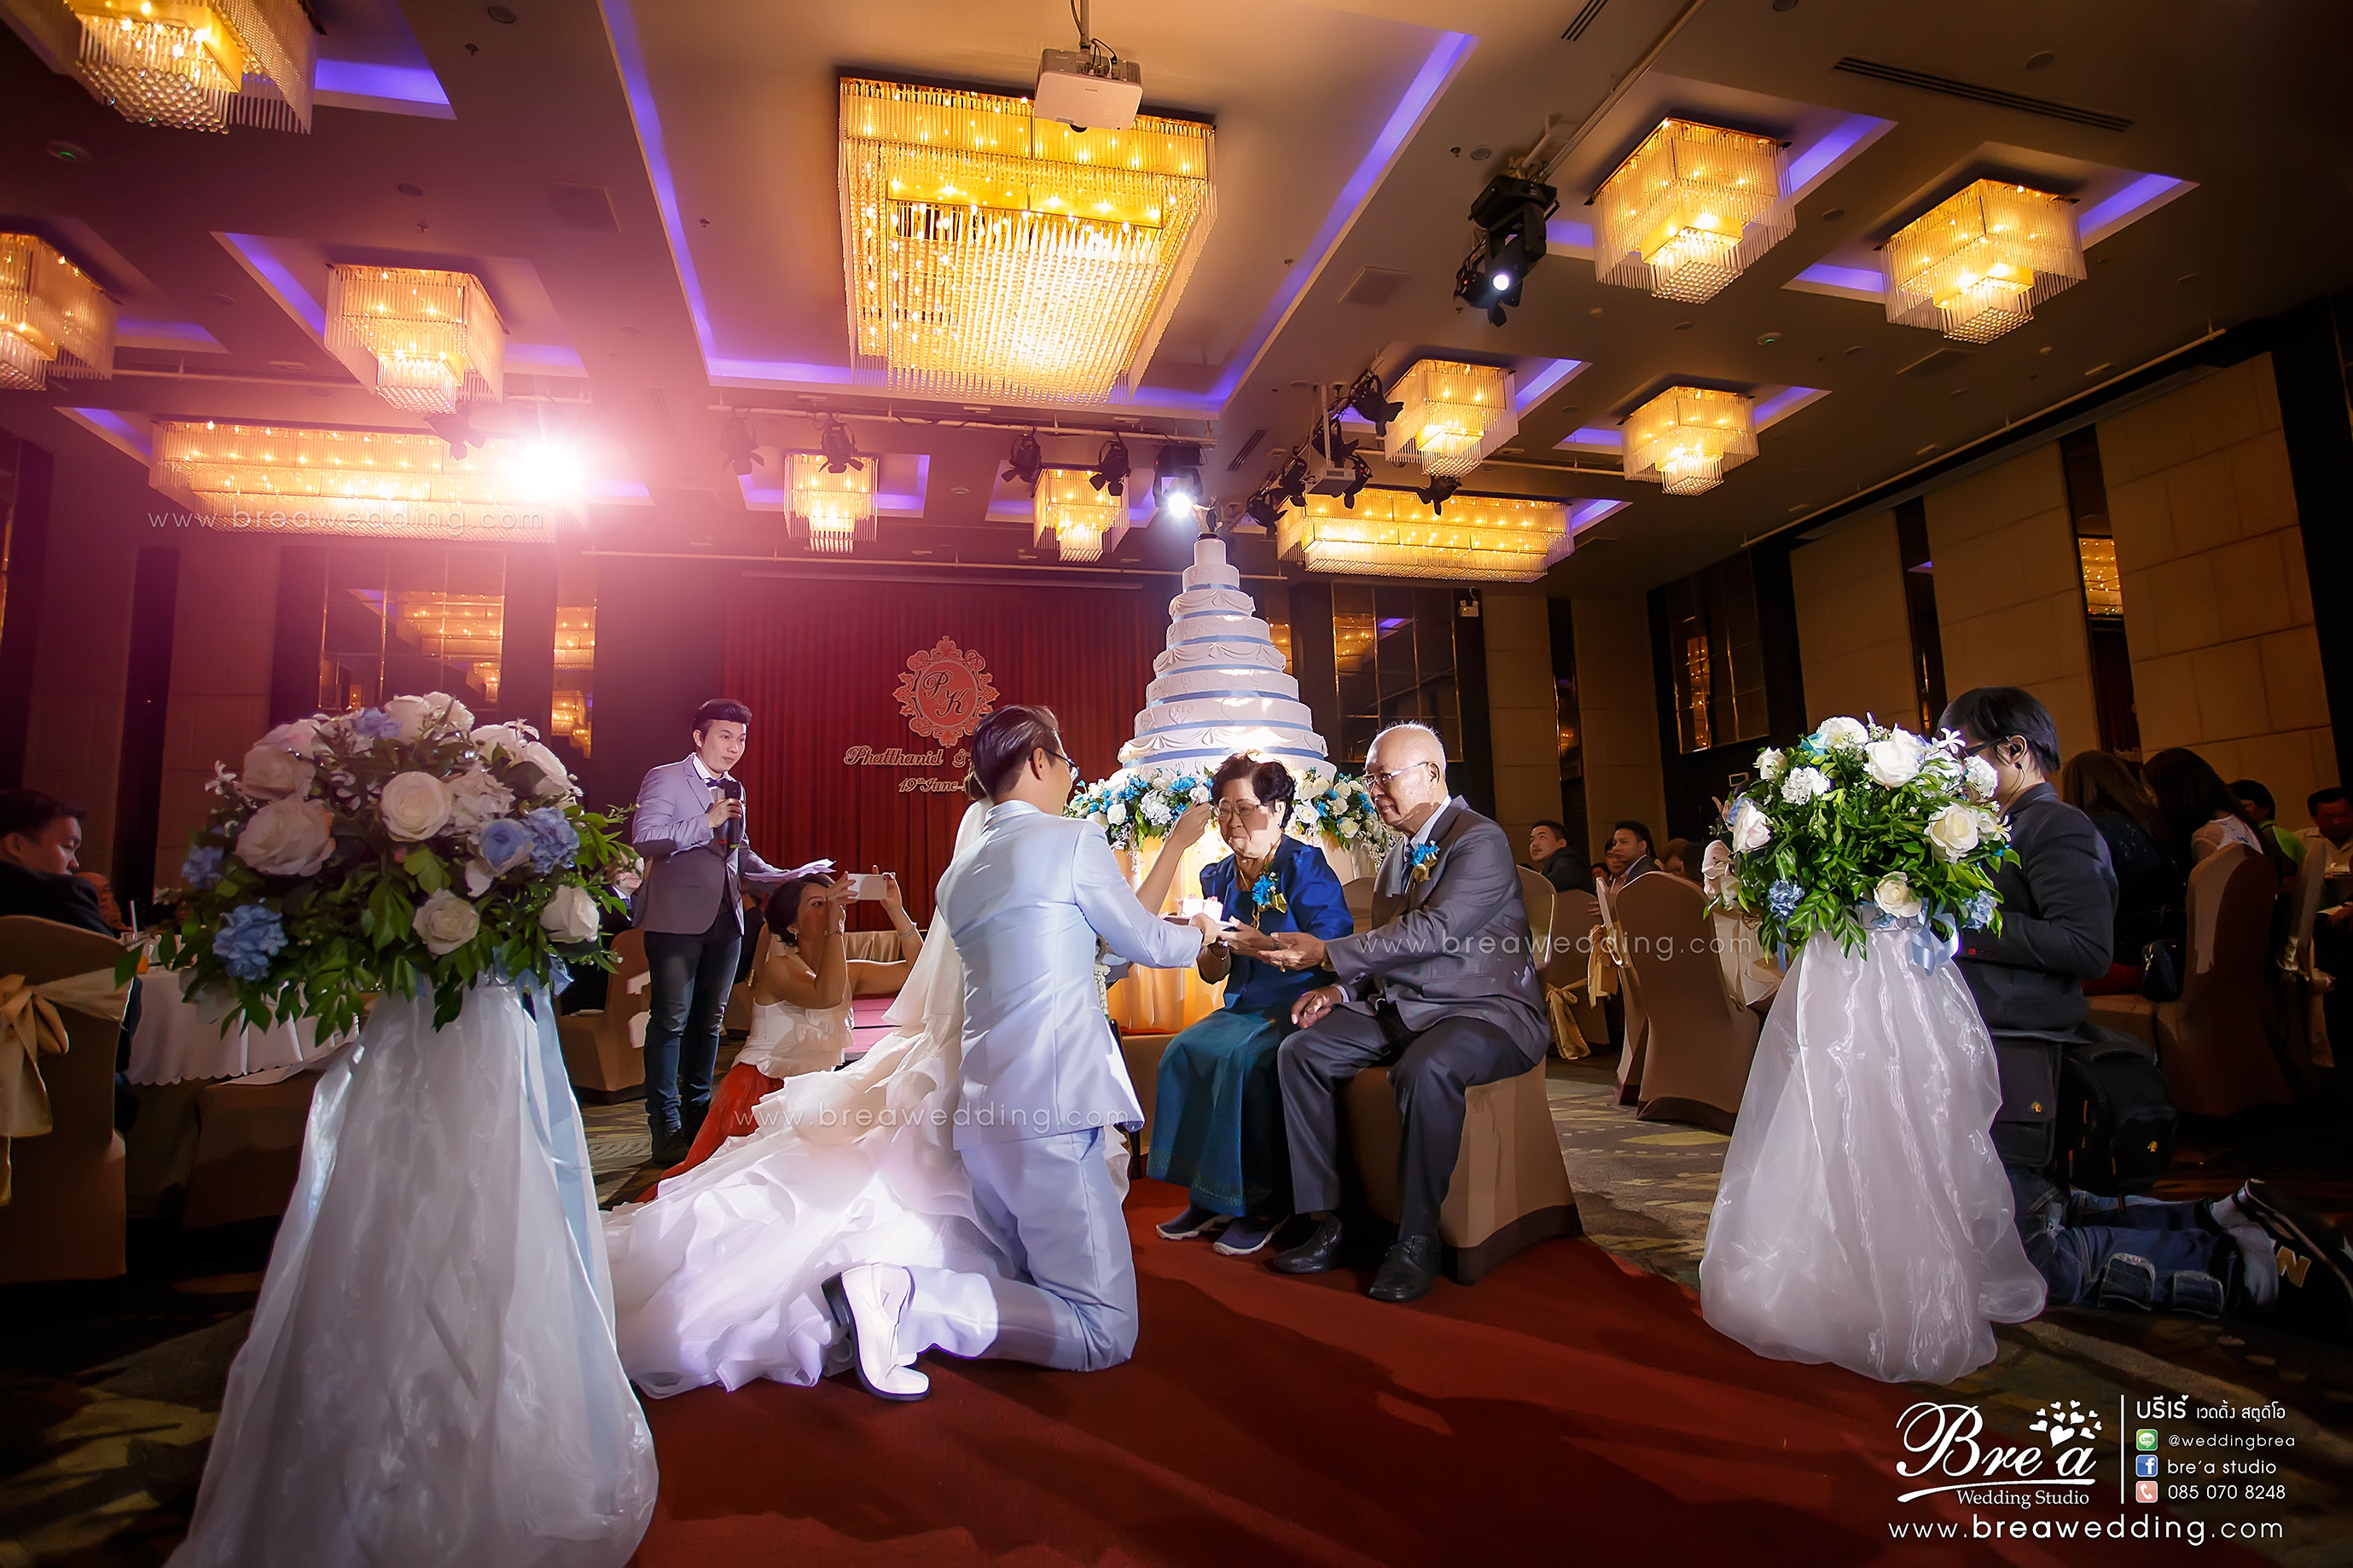 ถ่ายรูปแต่งงาน ถ่ายภาพวันแต่งงาน ร้านเวดดิ้ง เช่าชุดแต่งงาน นนทบุรี